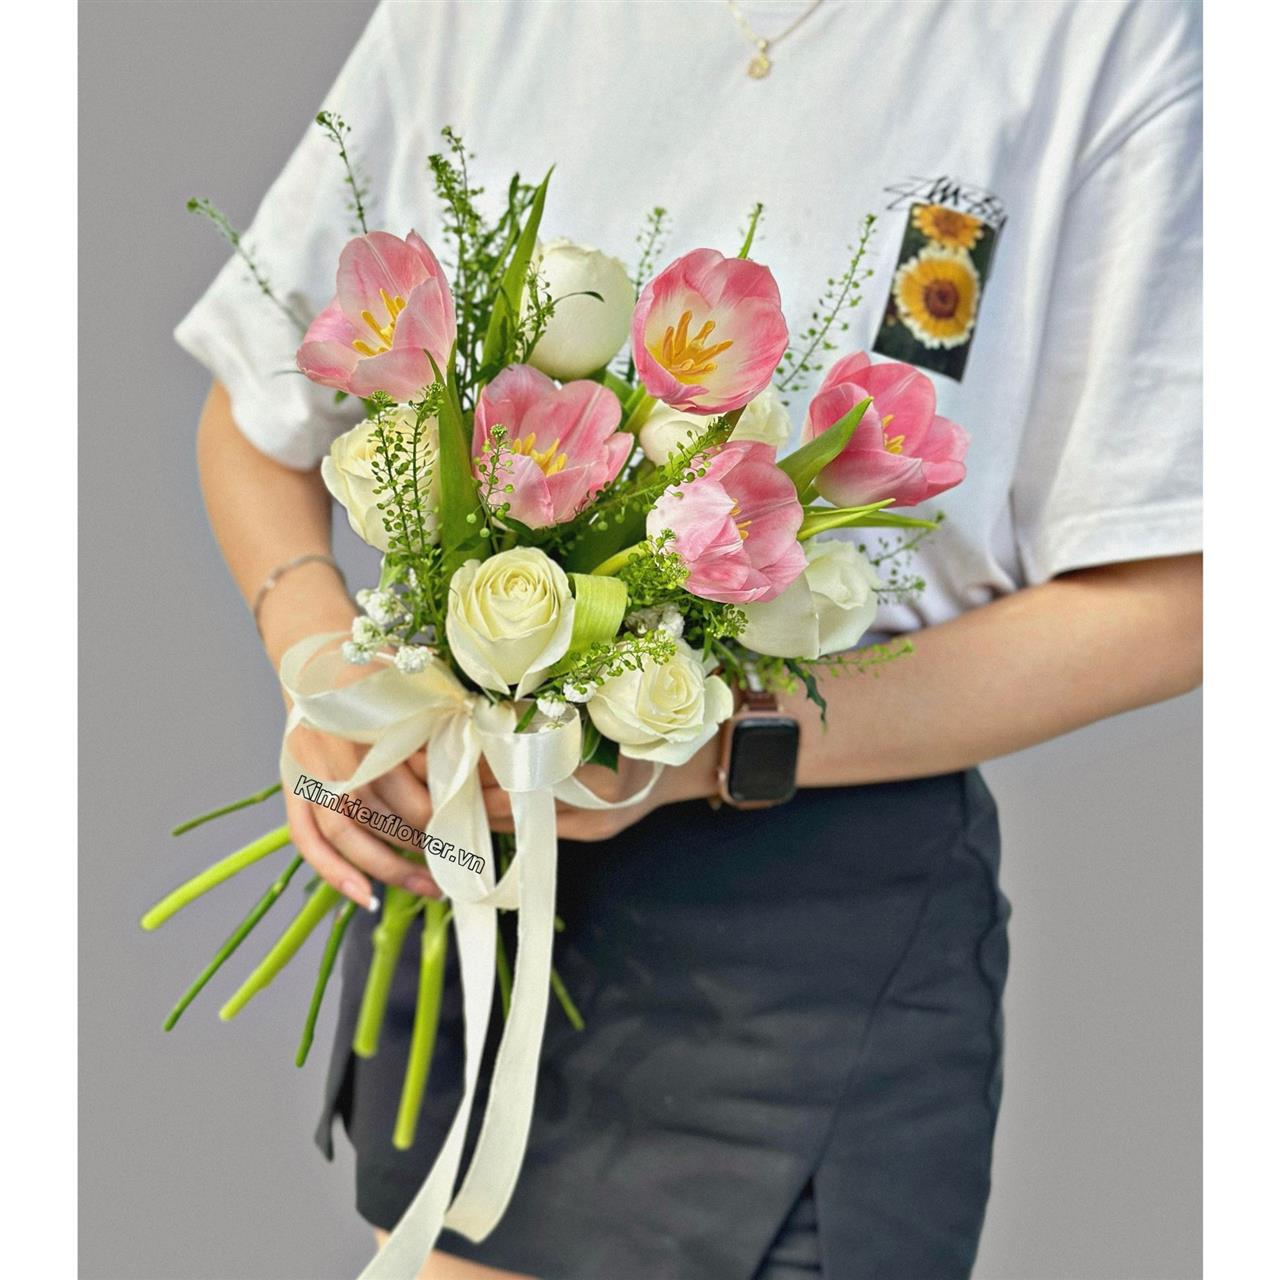 Bó hoa cưới tulip hồng mix hoa hồng trắng - nhẹ nhàng dễ thương nhưng cũng không kém phần sang trọng, thanh lịch